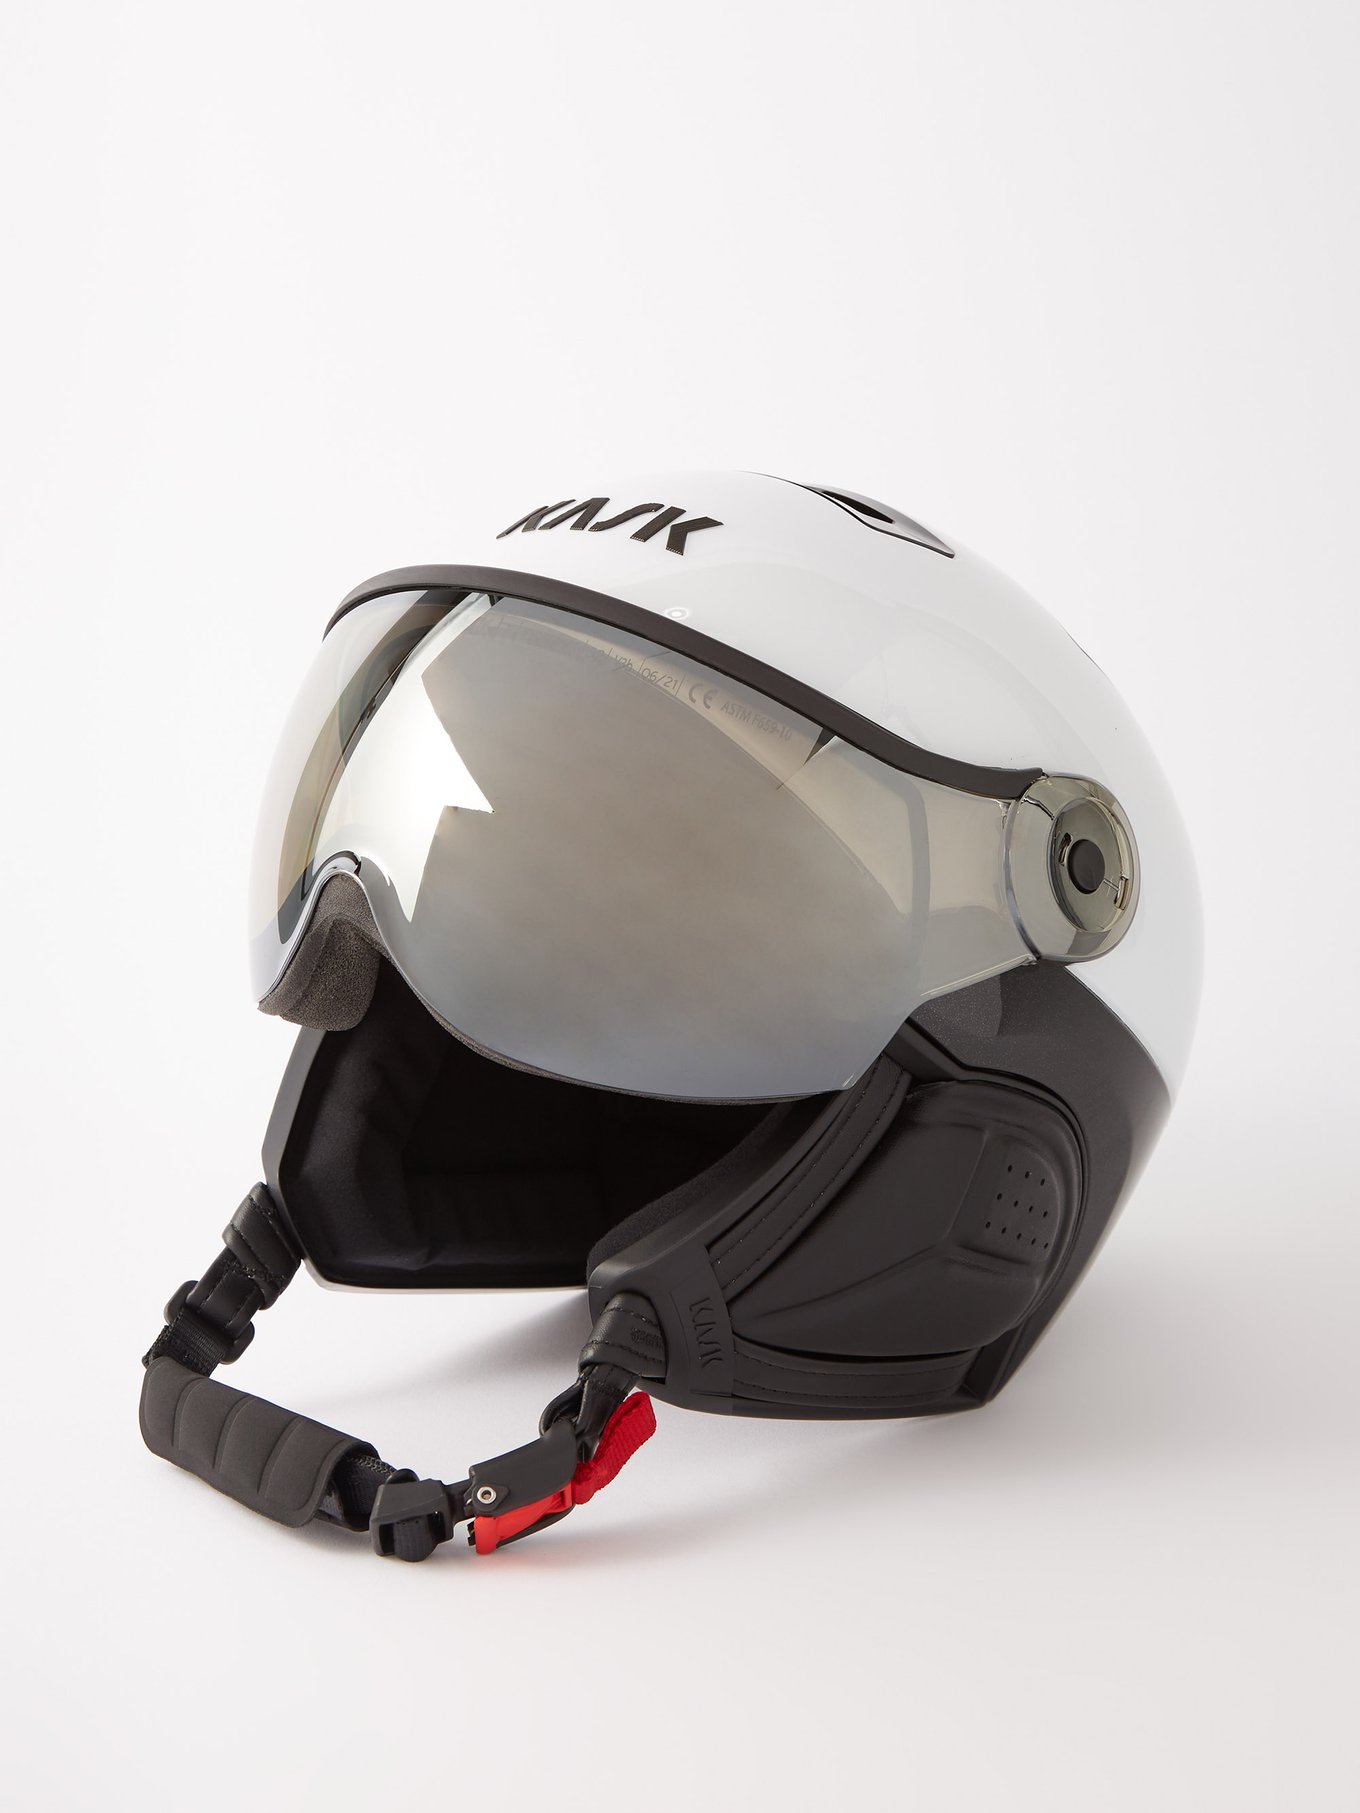 KASK〔カスク スキーヘルメット〕CLASS SPORT バイザー付き-